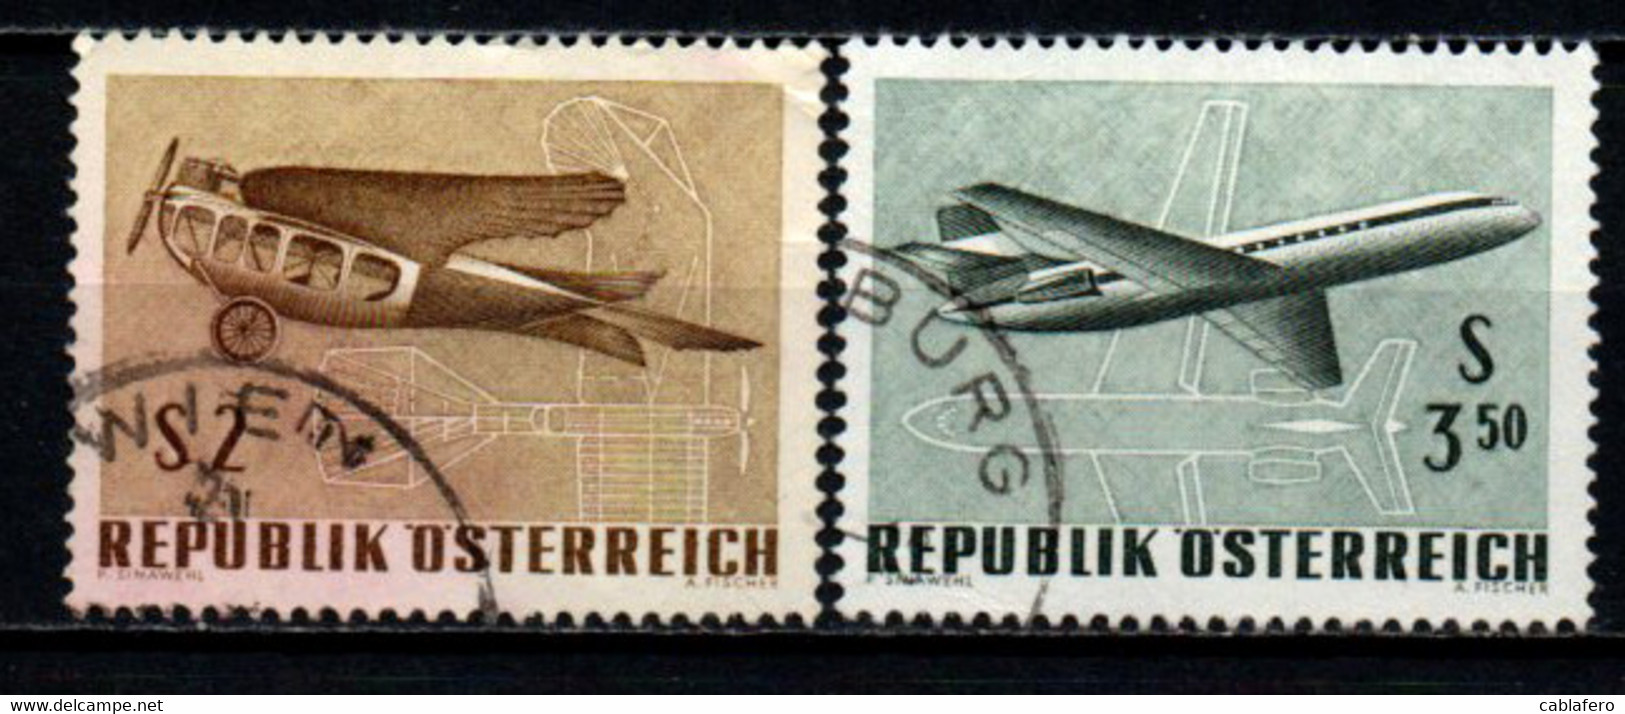 AUSTRIA - 1968 - ESPOSIZIONE INTERNAZIONALE DI POSTA AEREA A VIENNA - USATI - Usati